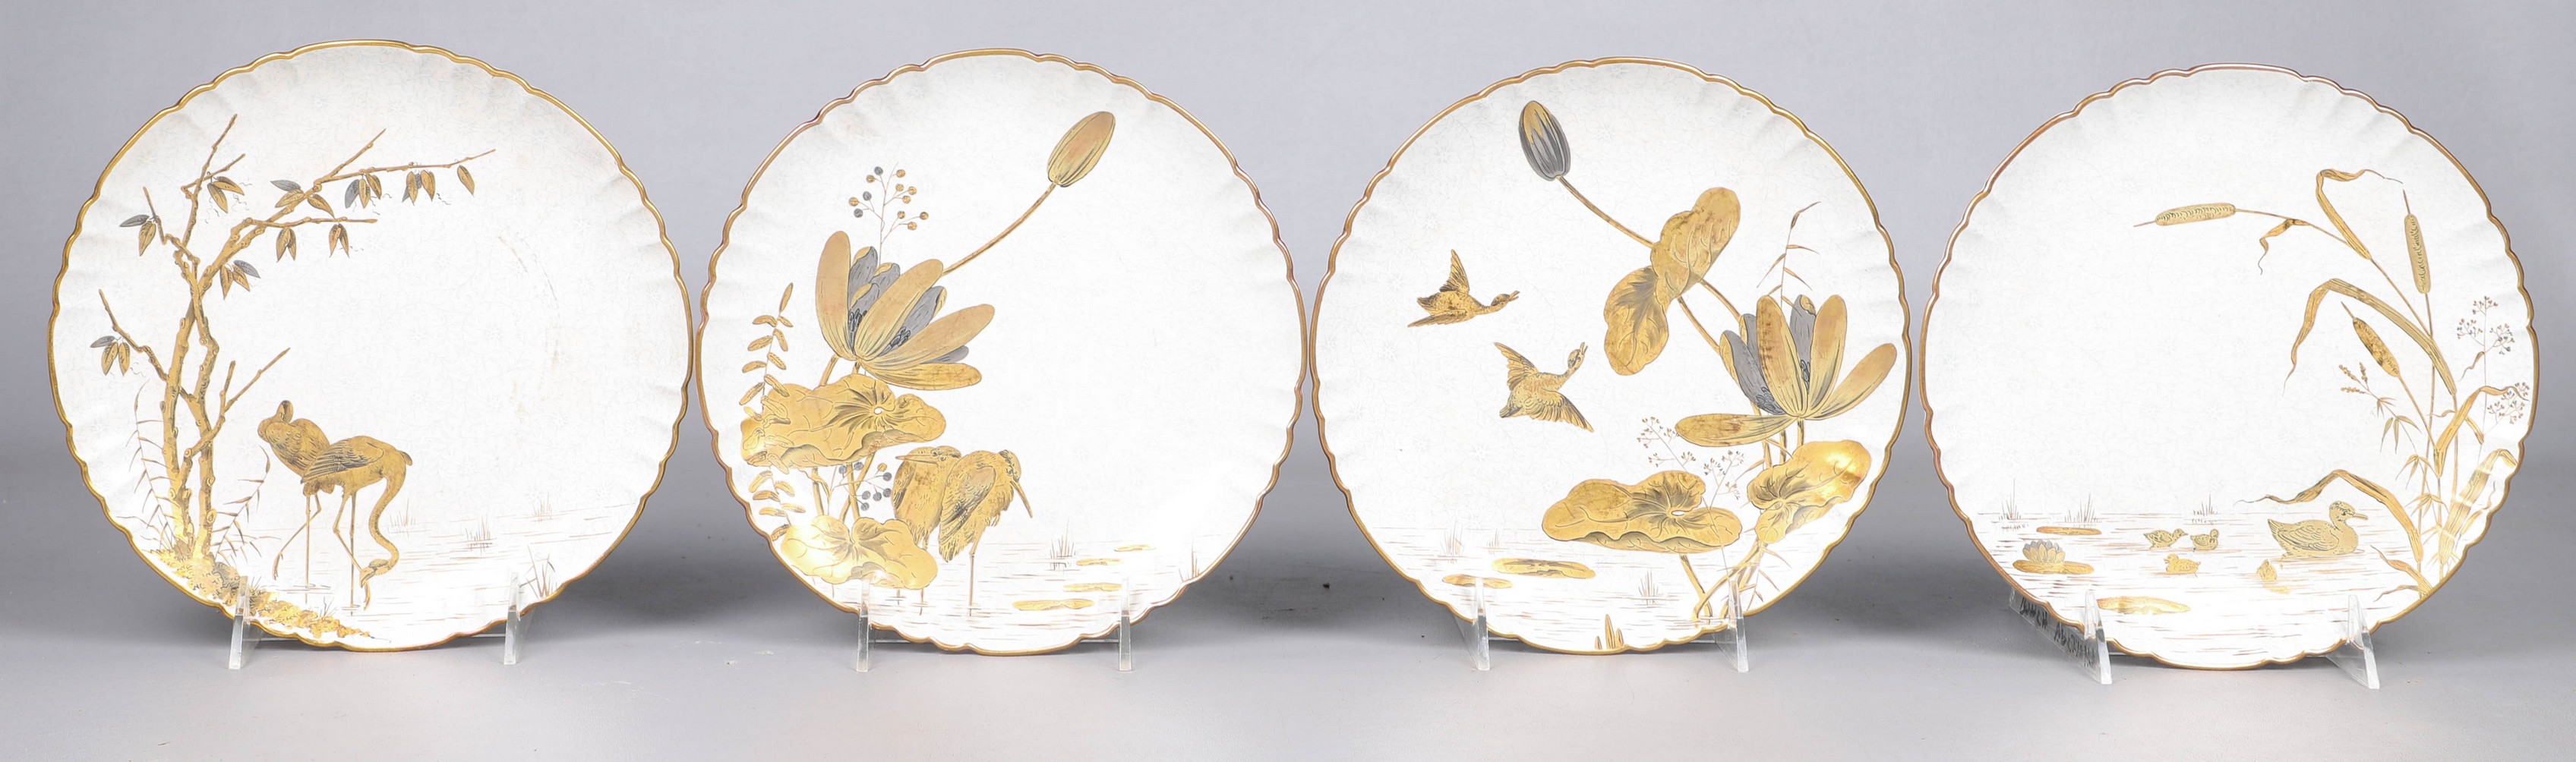  4 Hand gilded porcelain plates  27a5e0